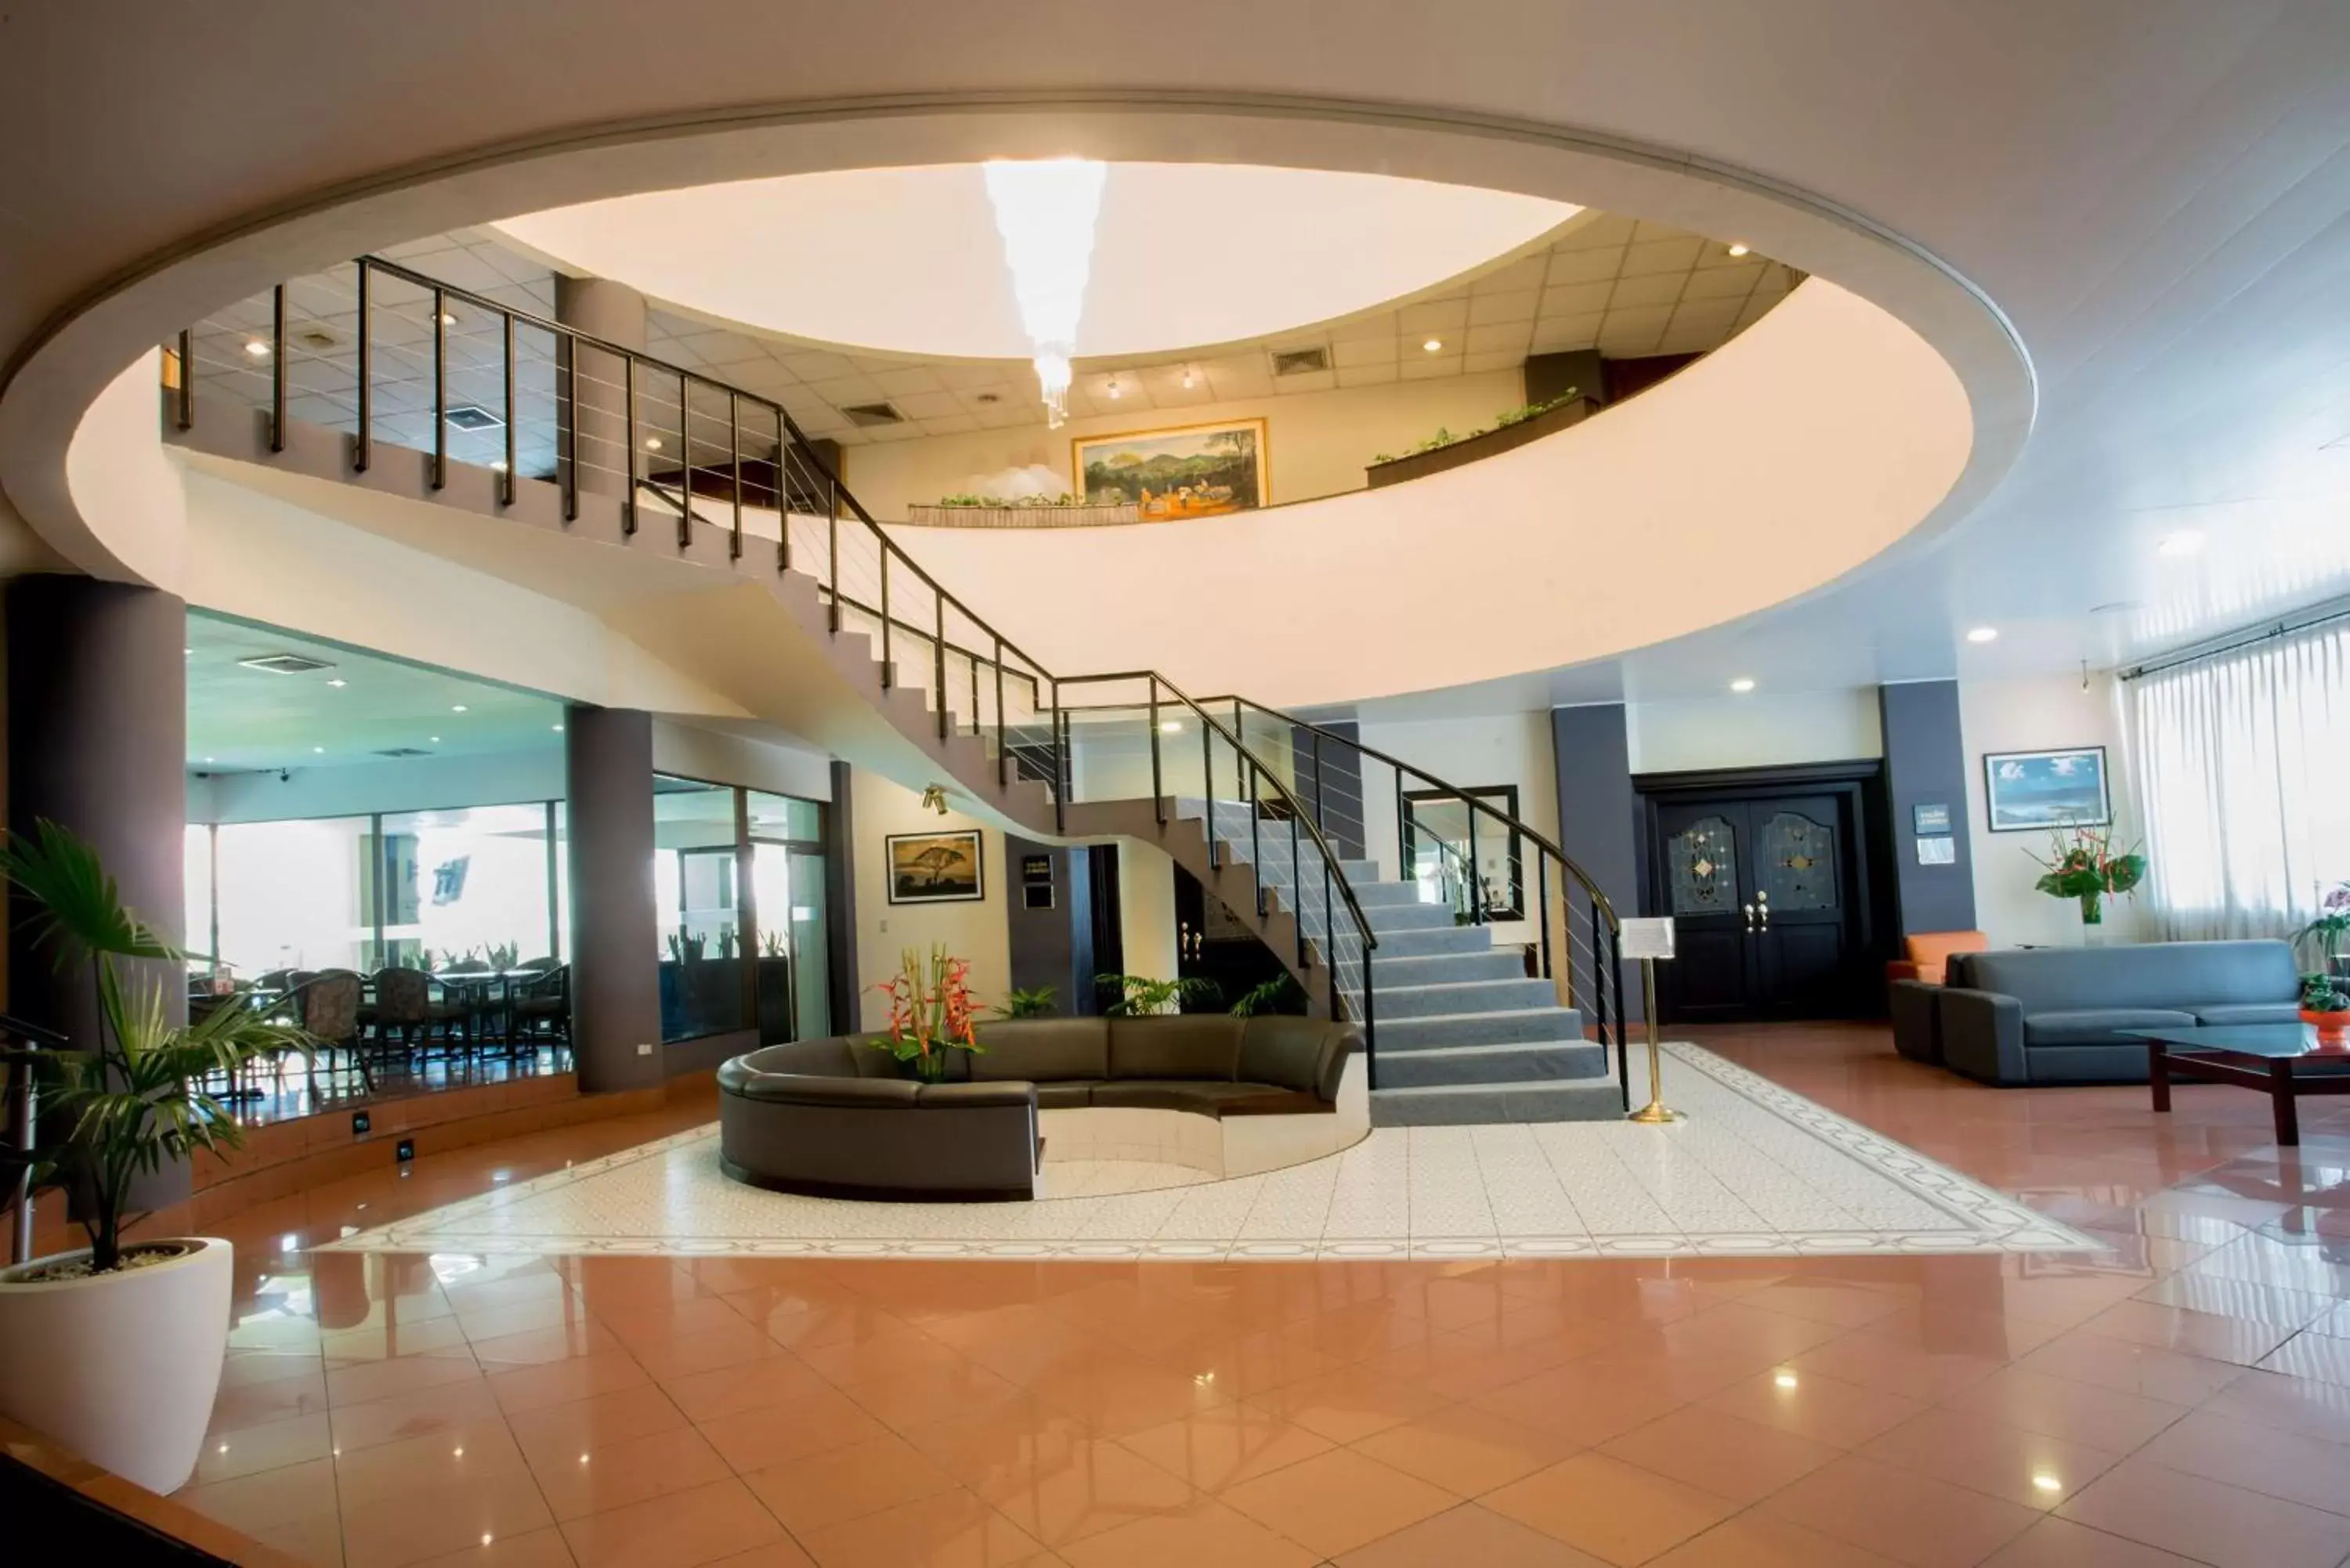 Lobby or reception, Lobby/Reception in Best Western Plus Hotel Terraza